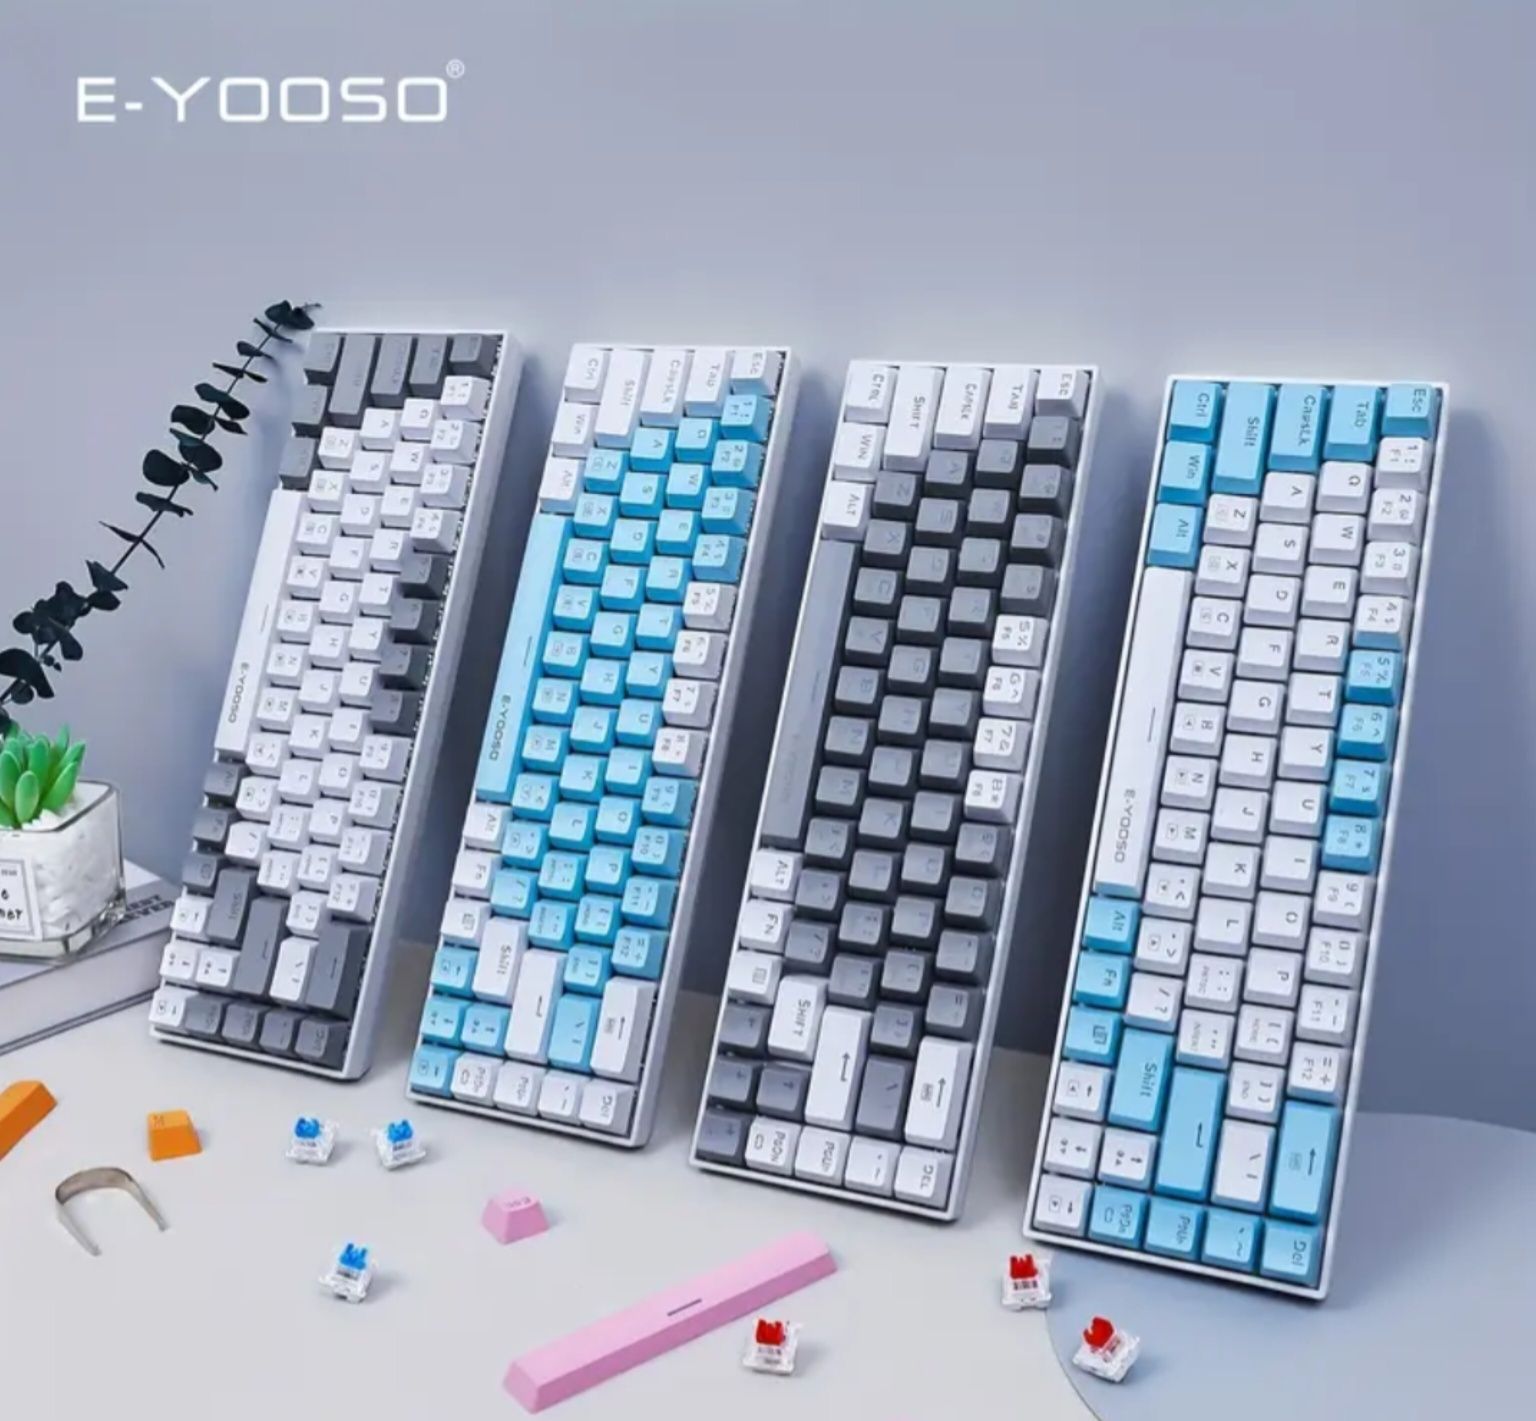 E-YOOSO Z-686 Портативная 65% механическая игровая клавиатура